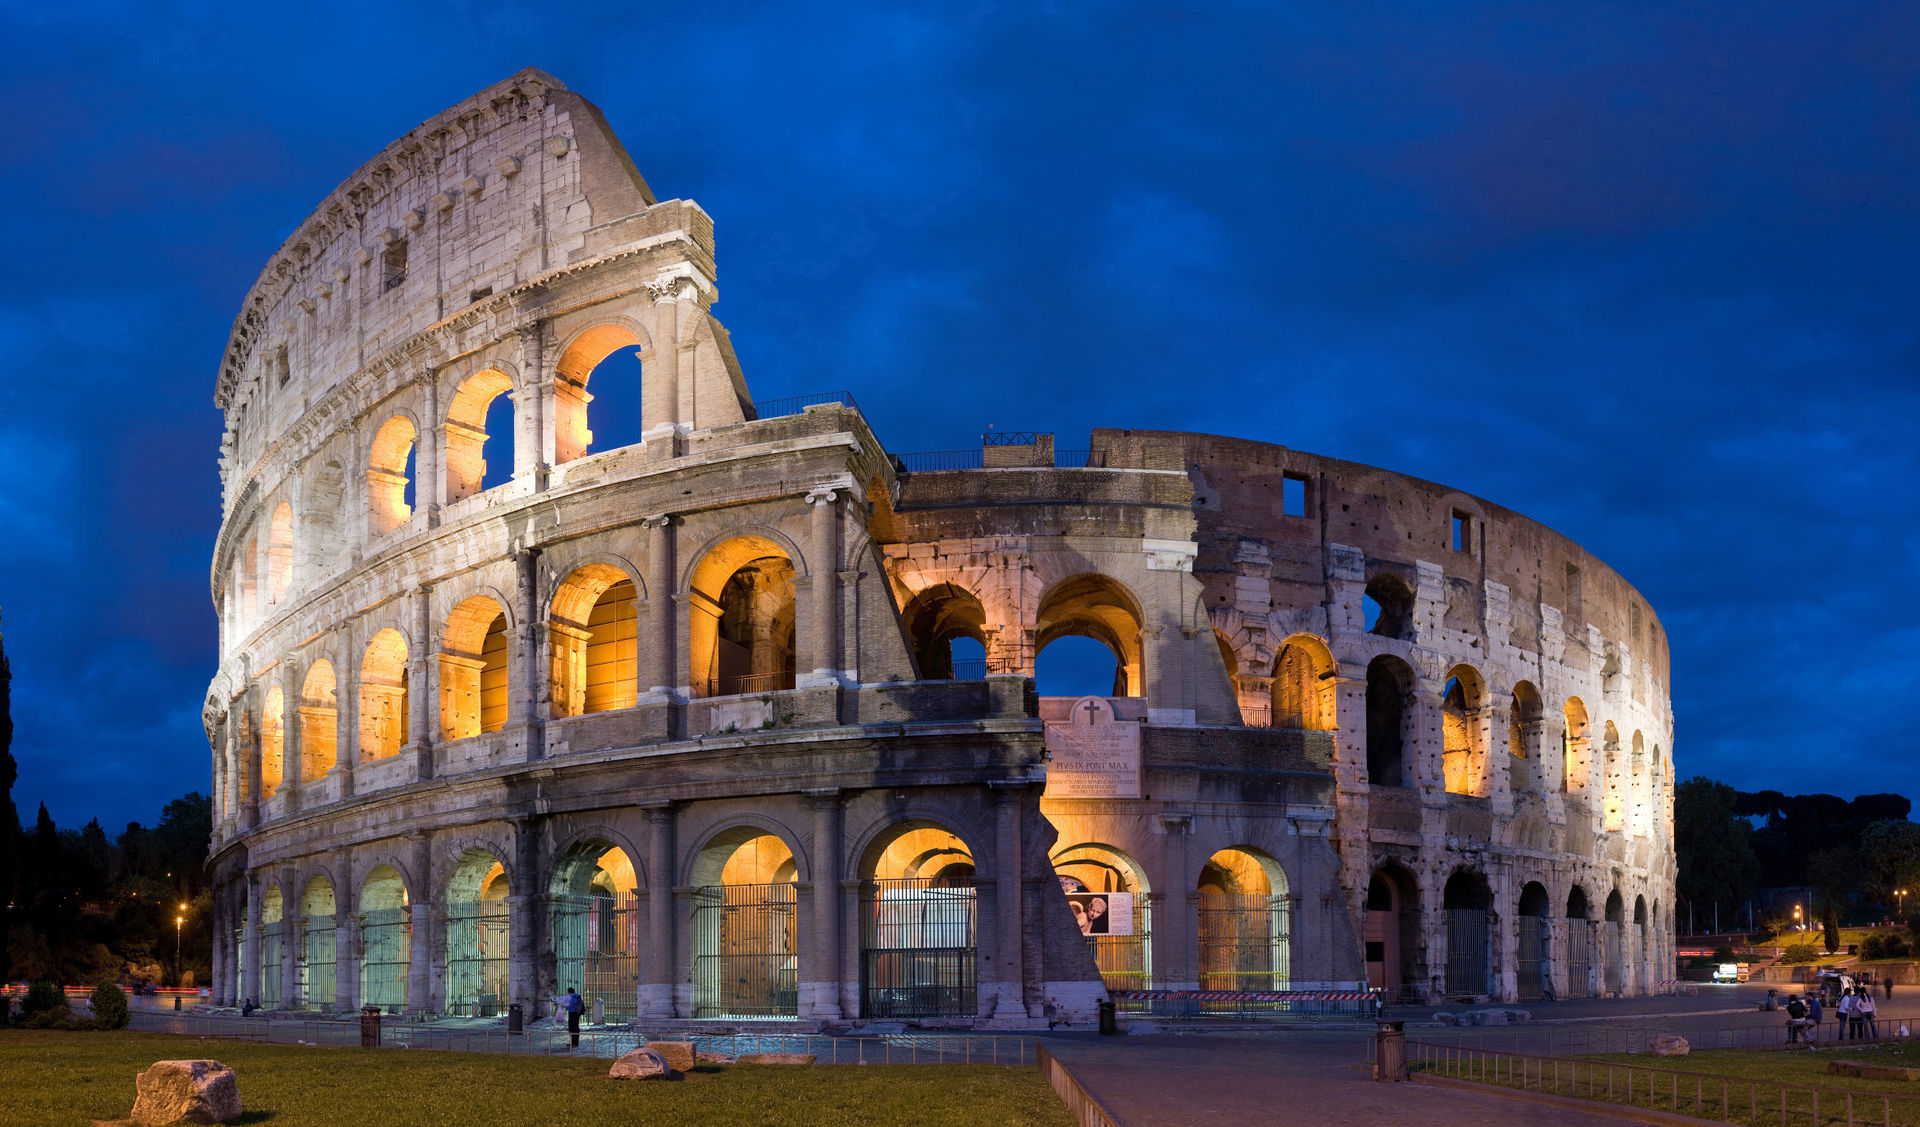 Du khách bị bắt vì gỡ gạch từ di tích đấu trường Colosseo làm kỷ niệm